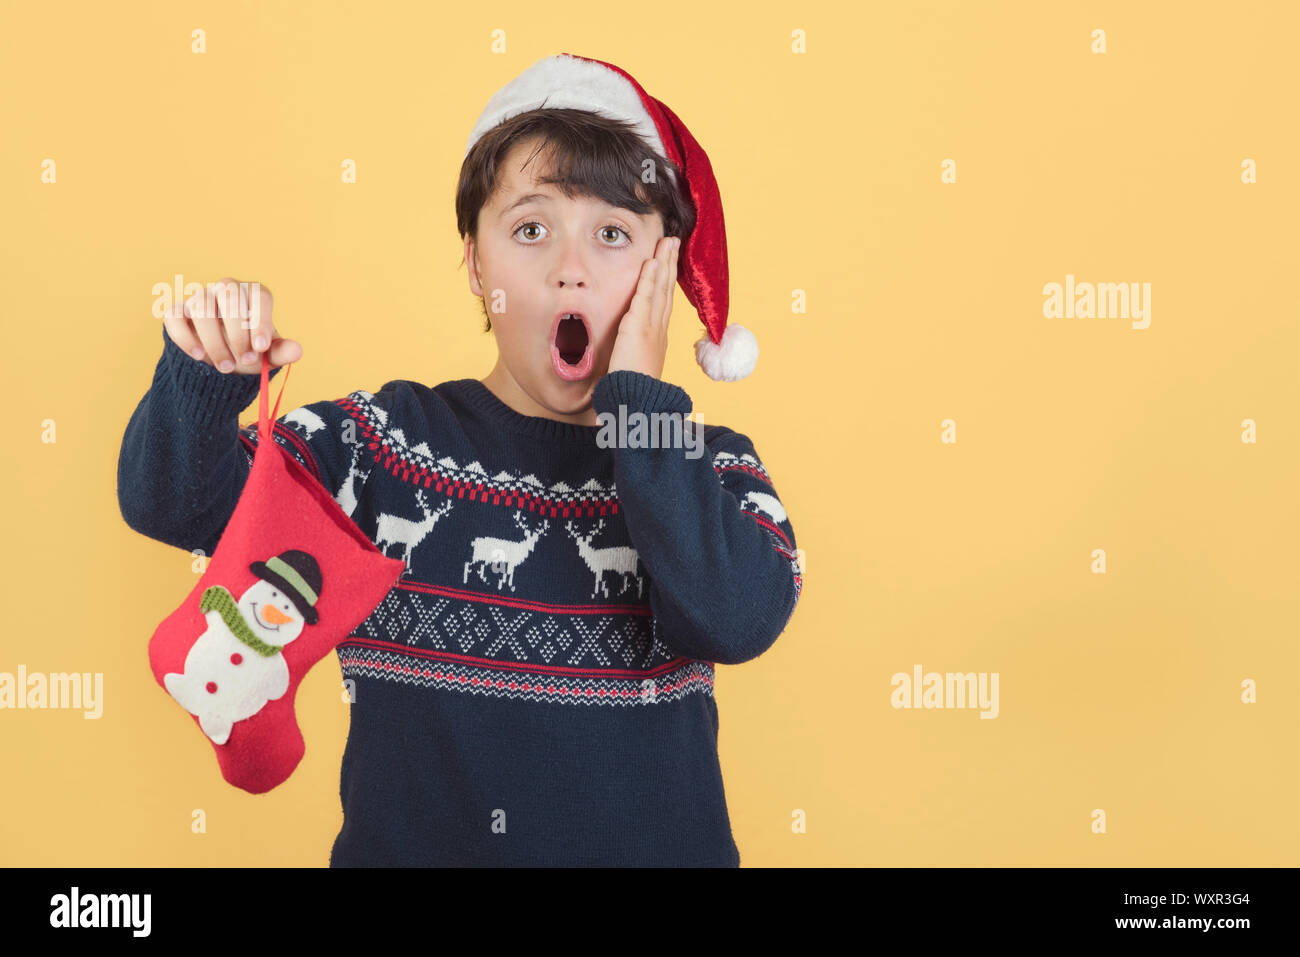 L'enfant surpris Wearing Christmas Santa Claus Hat sur fond jaune Banque D'Images